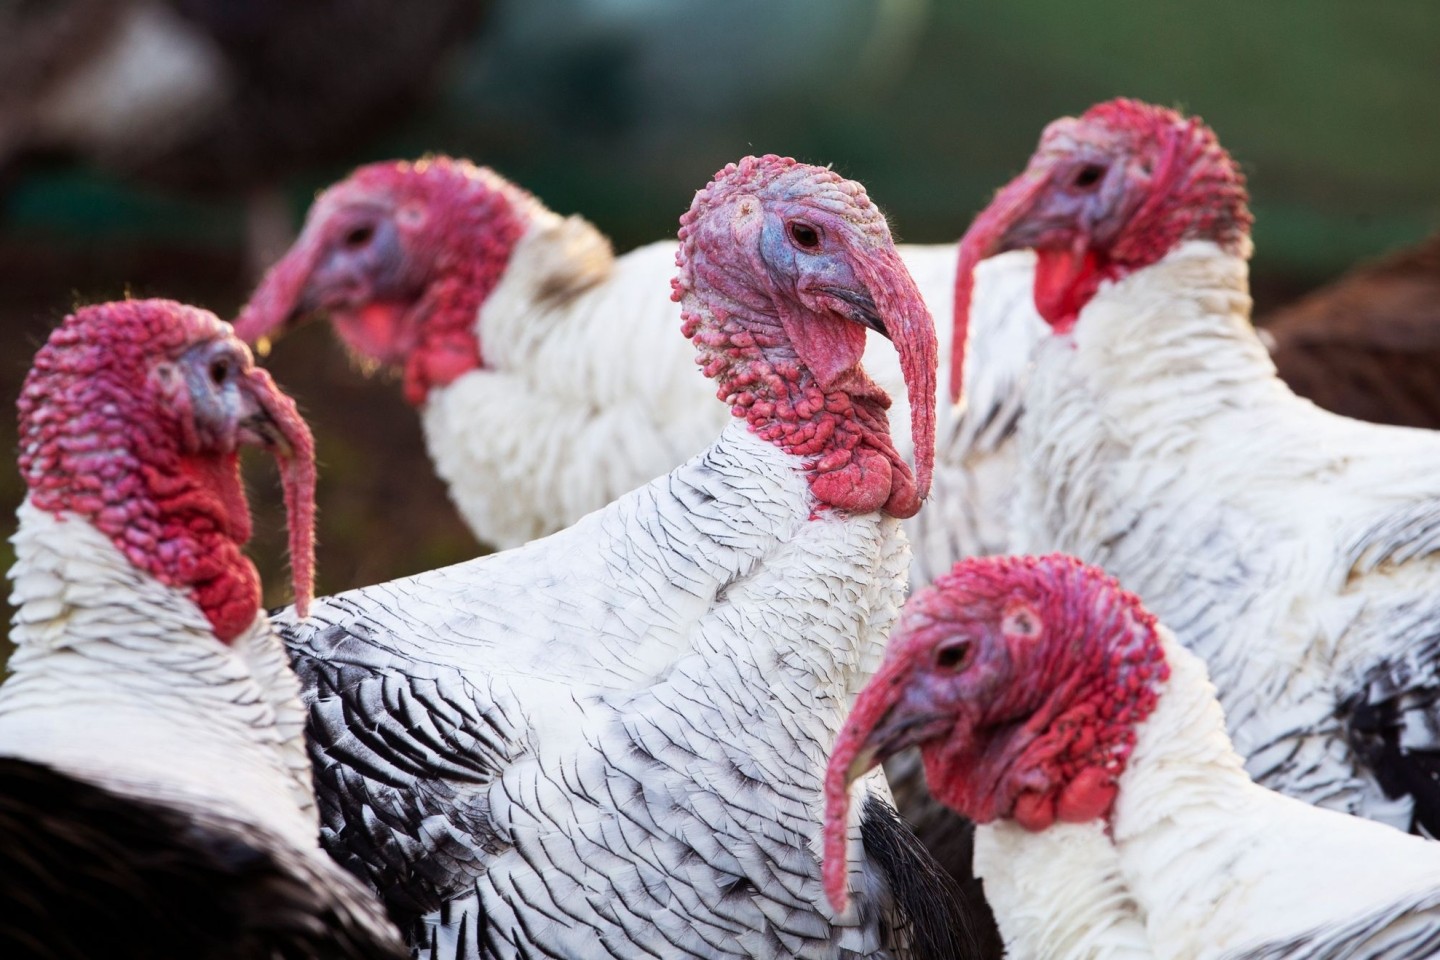 Die Vogelgrippe hat in Großbritannien nach Behördenangaben eine besorgniserregende Verbreitung gefunden.